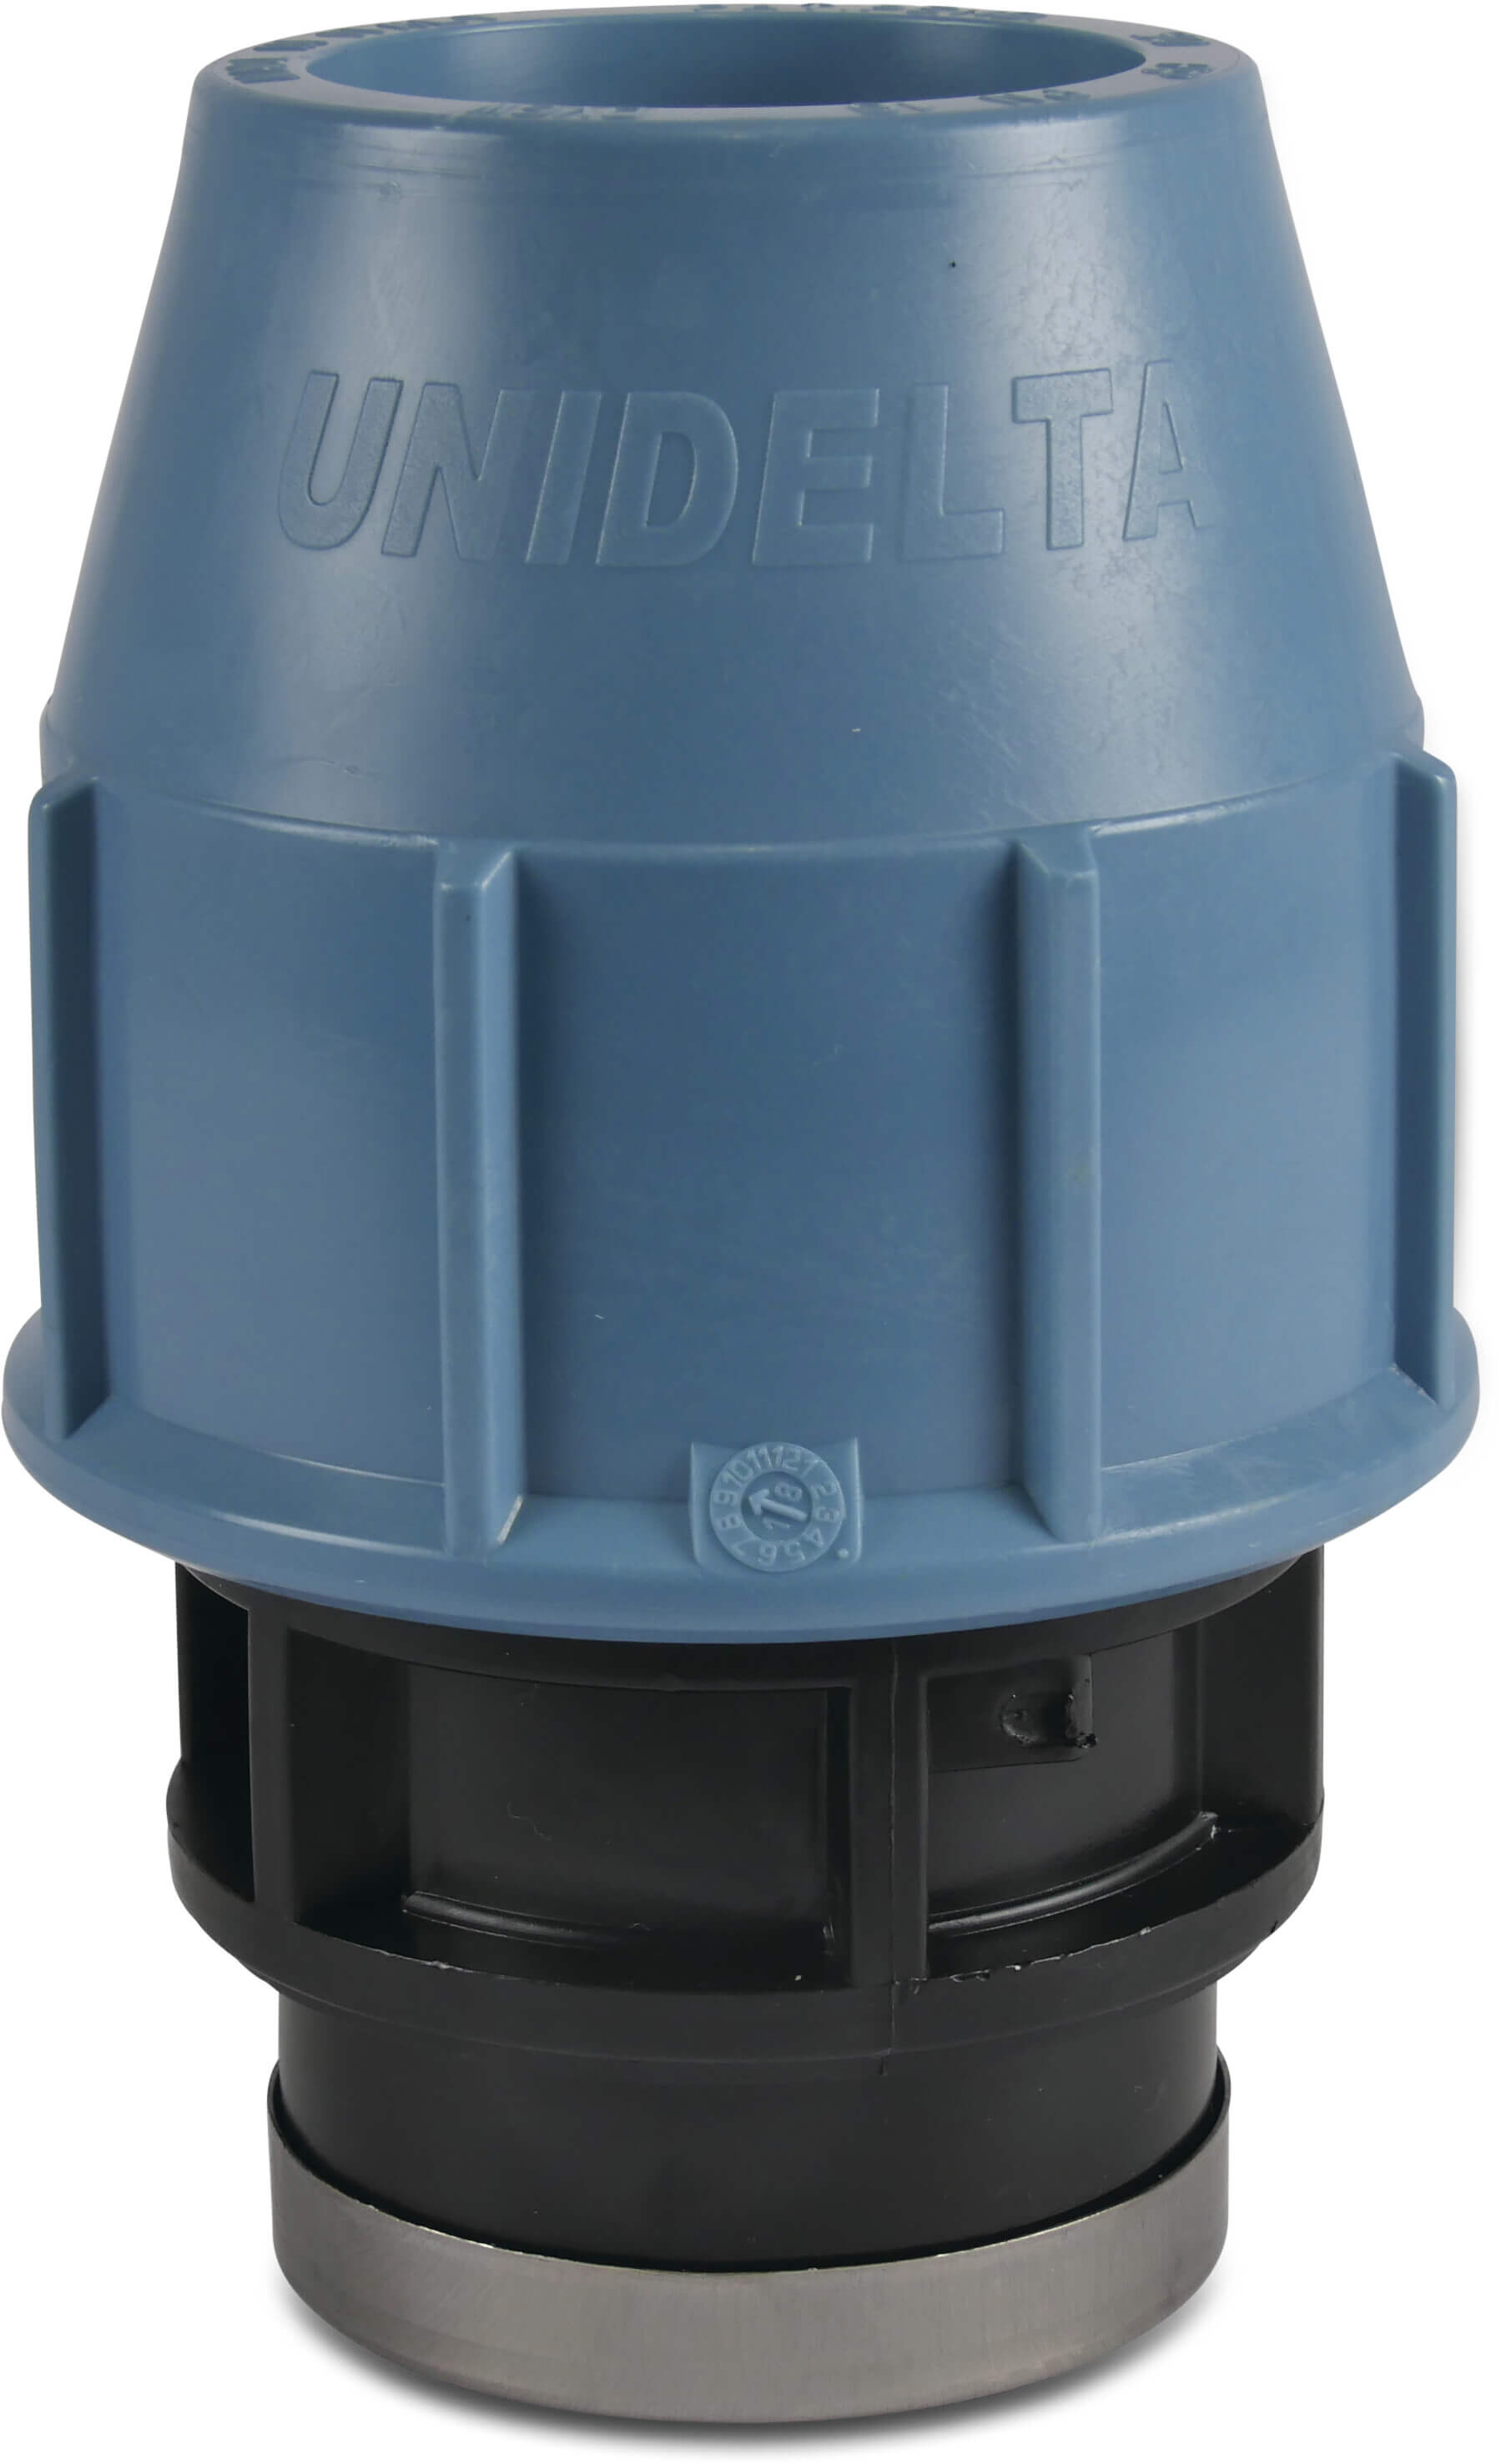 Unidelta Adaptor socket PP 20 mm x 1/2" compression x female thread 16bar black/blue DVGW/KIWA/WRAS